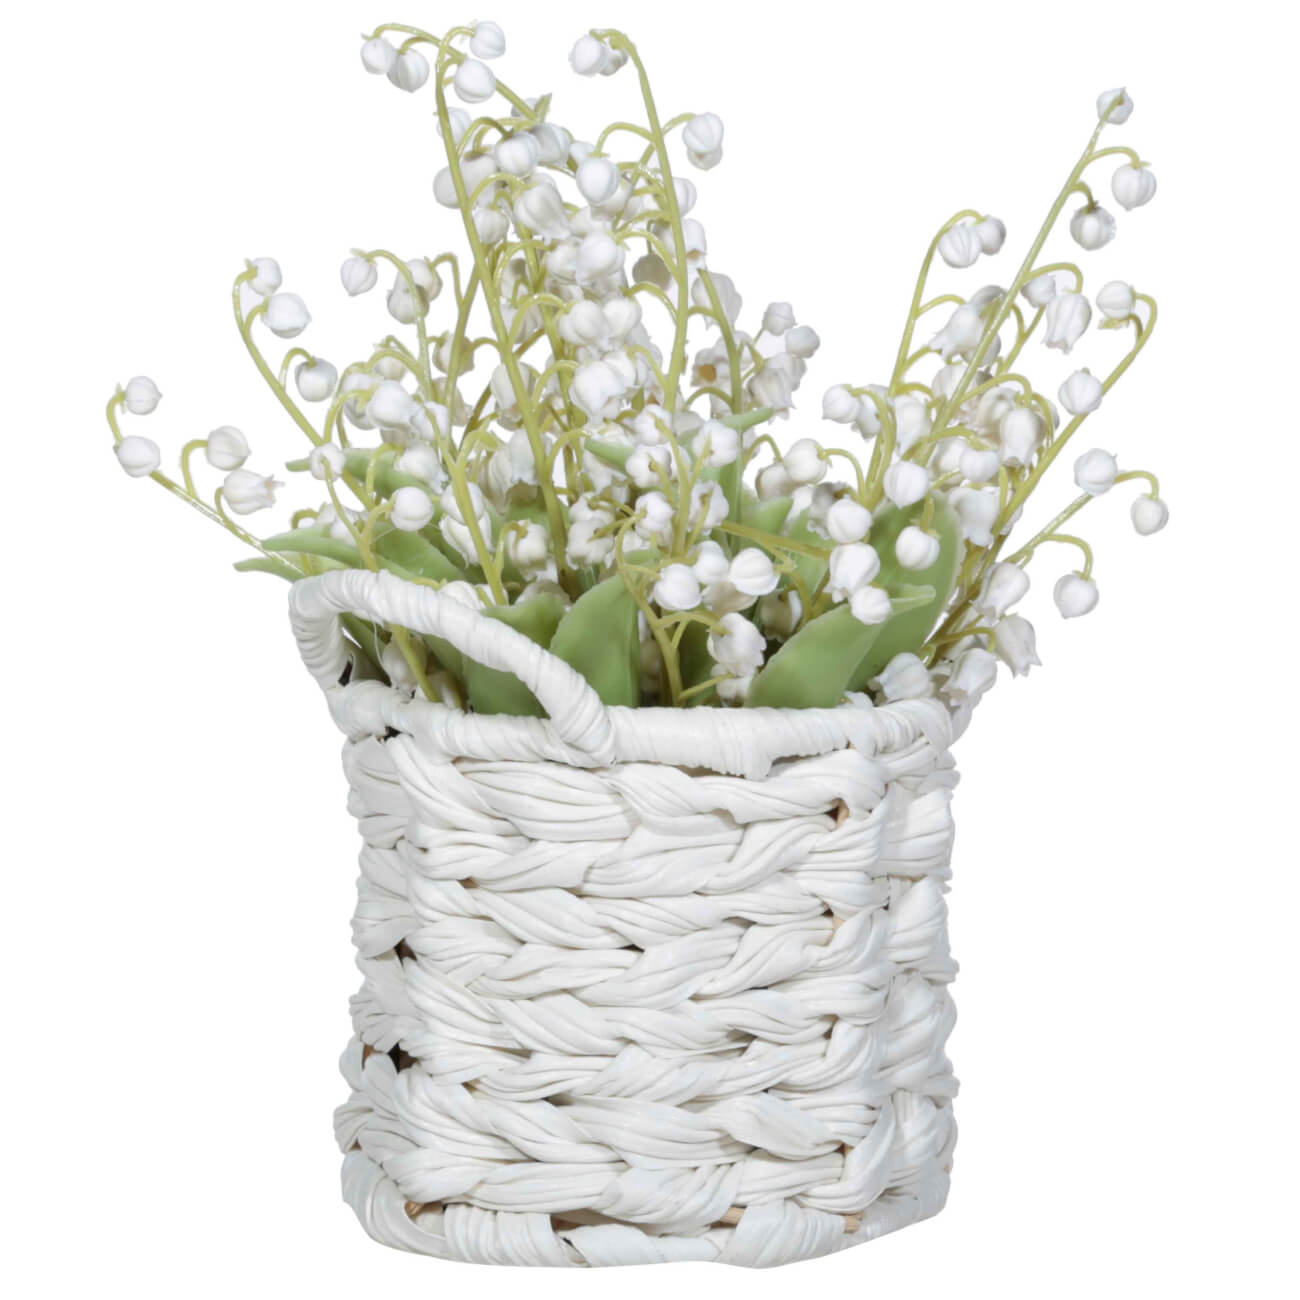 Растение искусственное, 23 см, в корзине, пластик/полиуретан, Корзина ландышей, May-lily изображение № 1